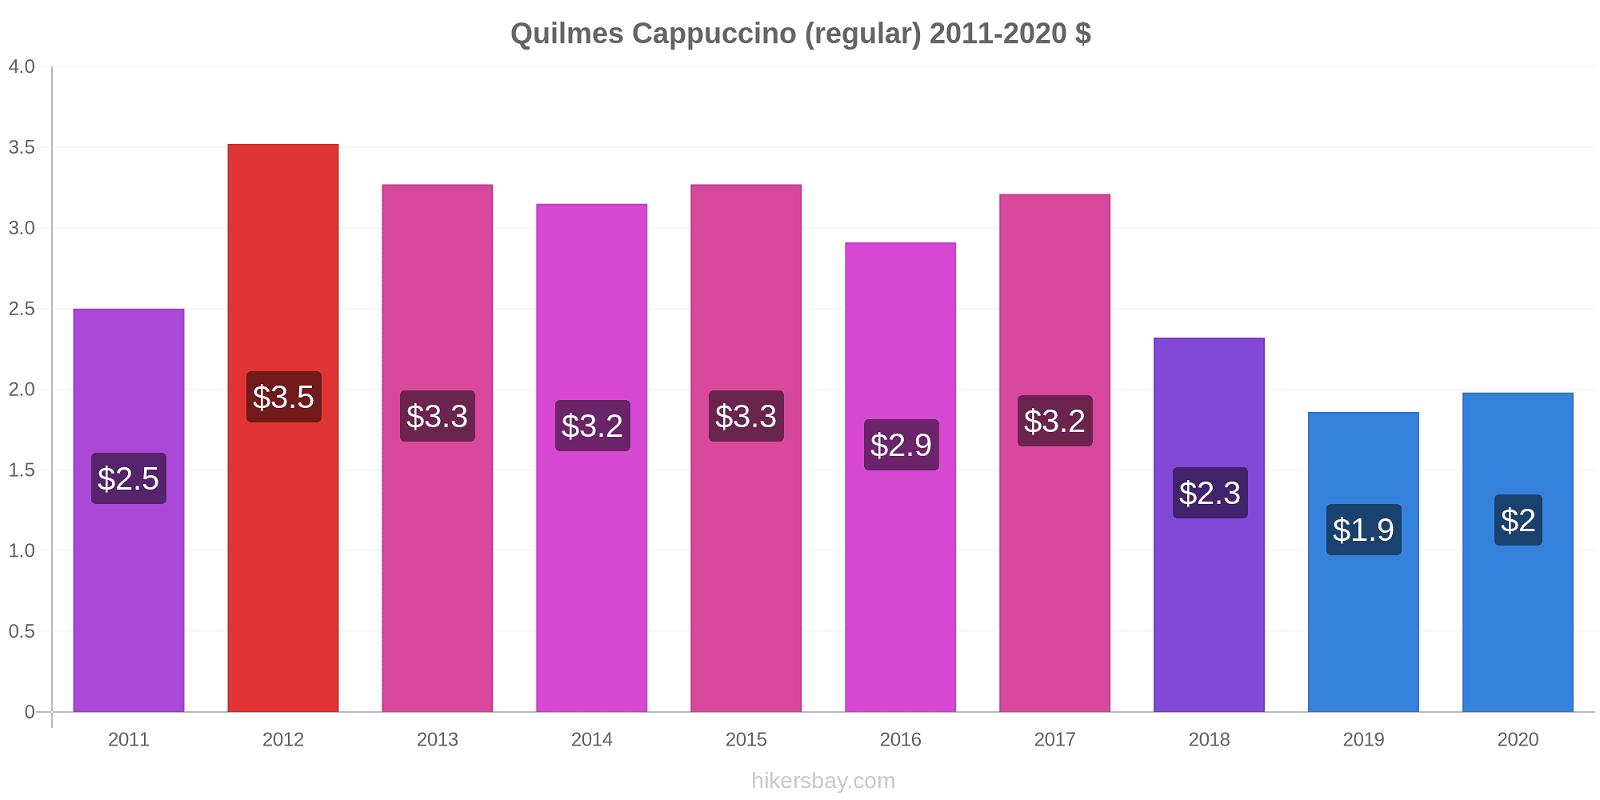 Quilmes price changes Cappuccino (regular) hikersbay.com